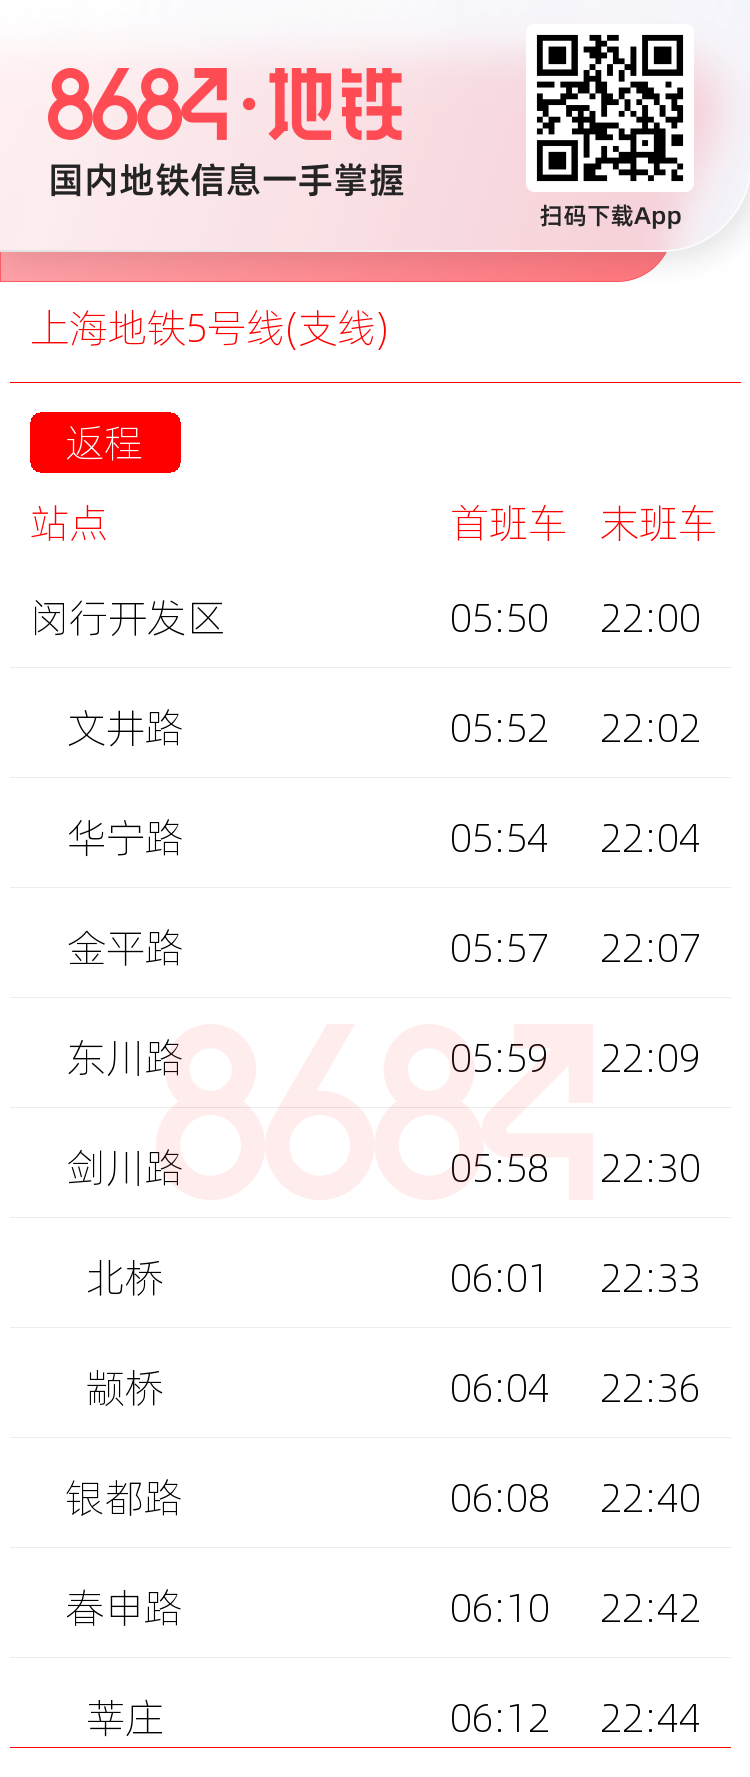 上海地铁5号线(支线)运营时间表